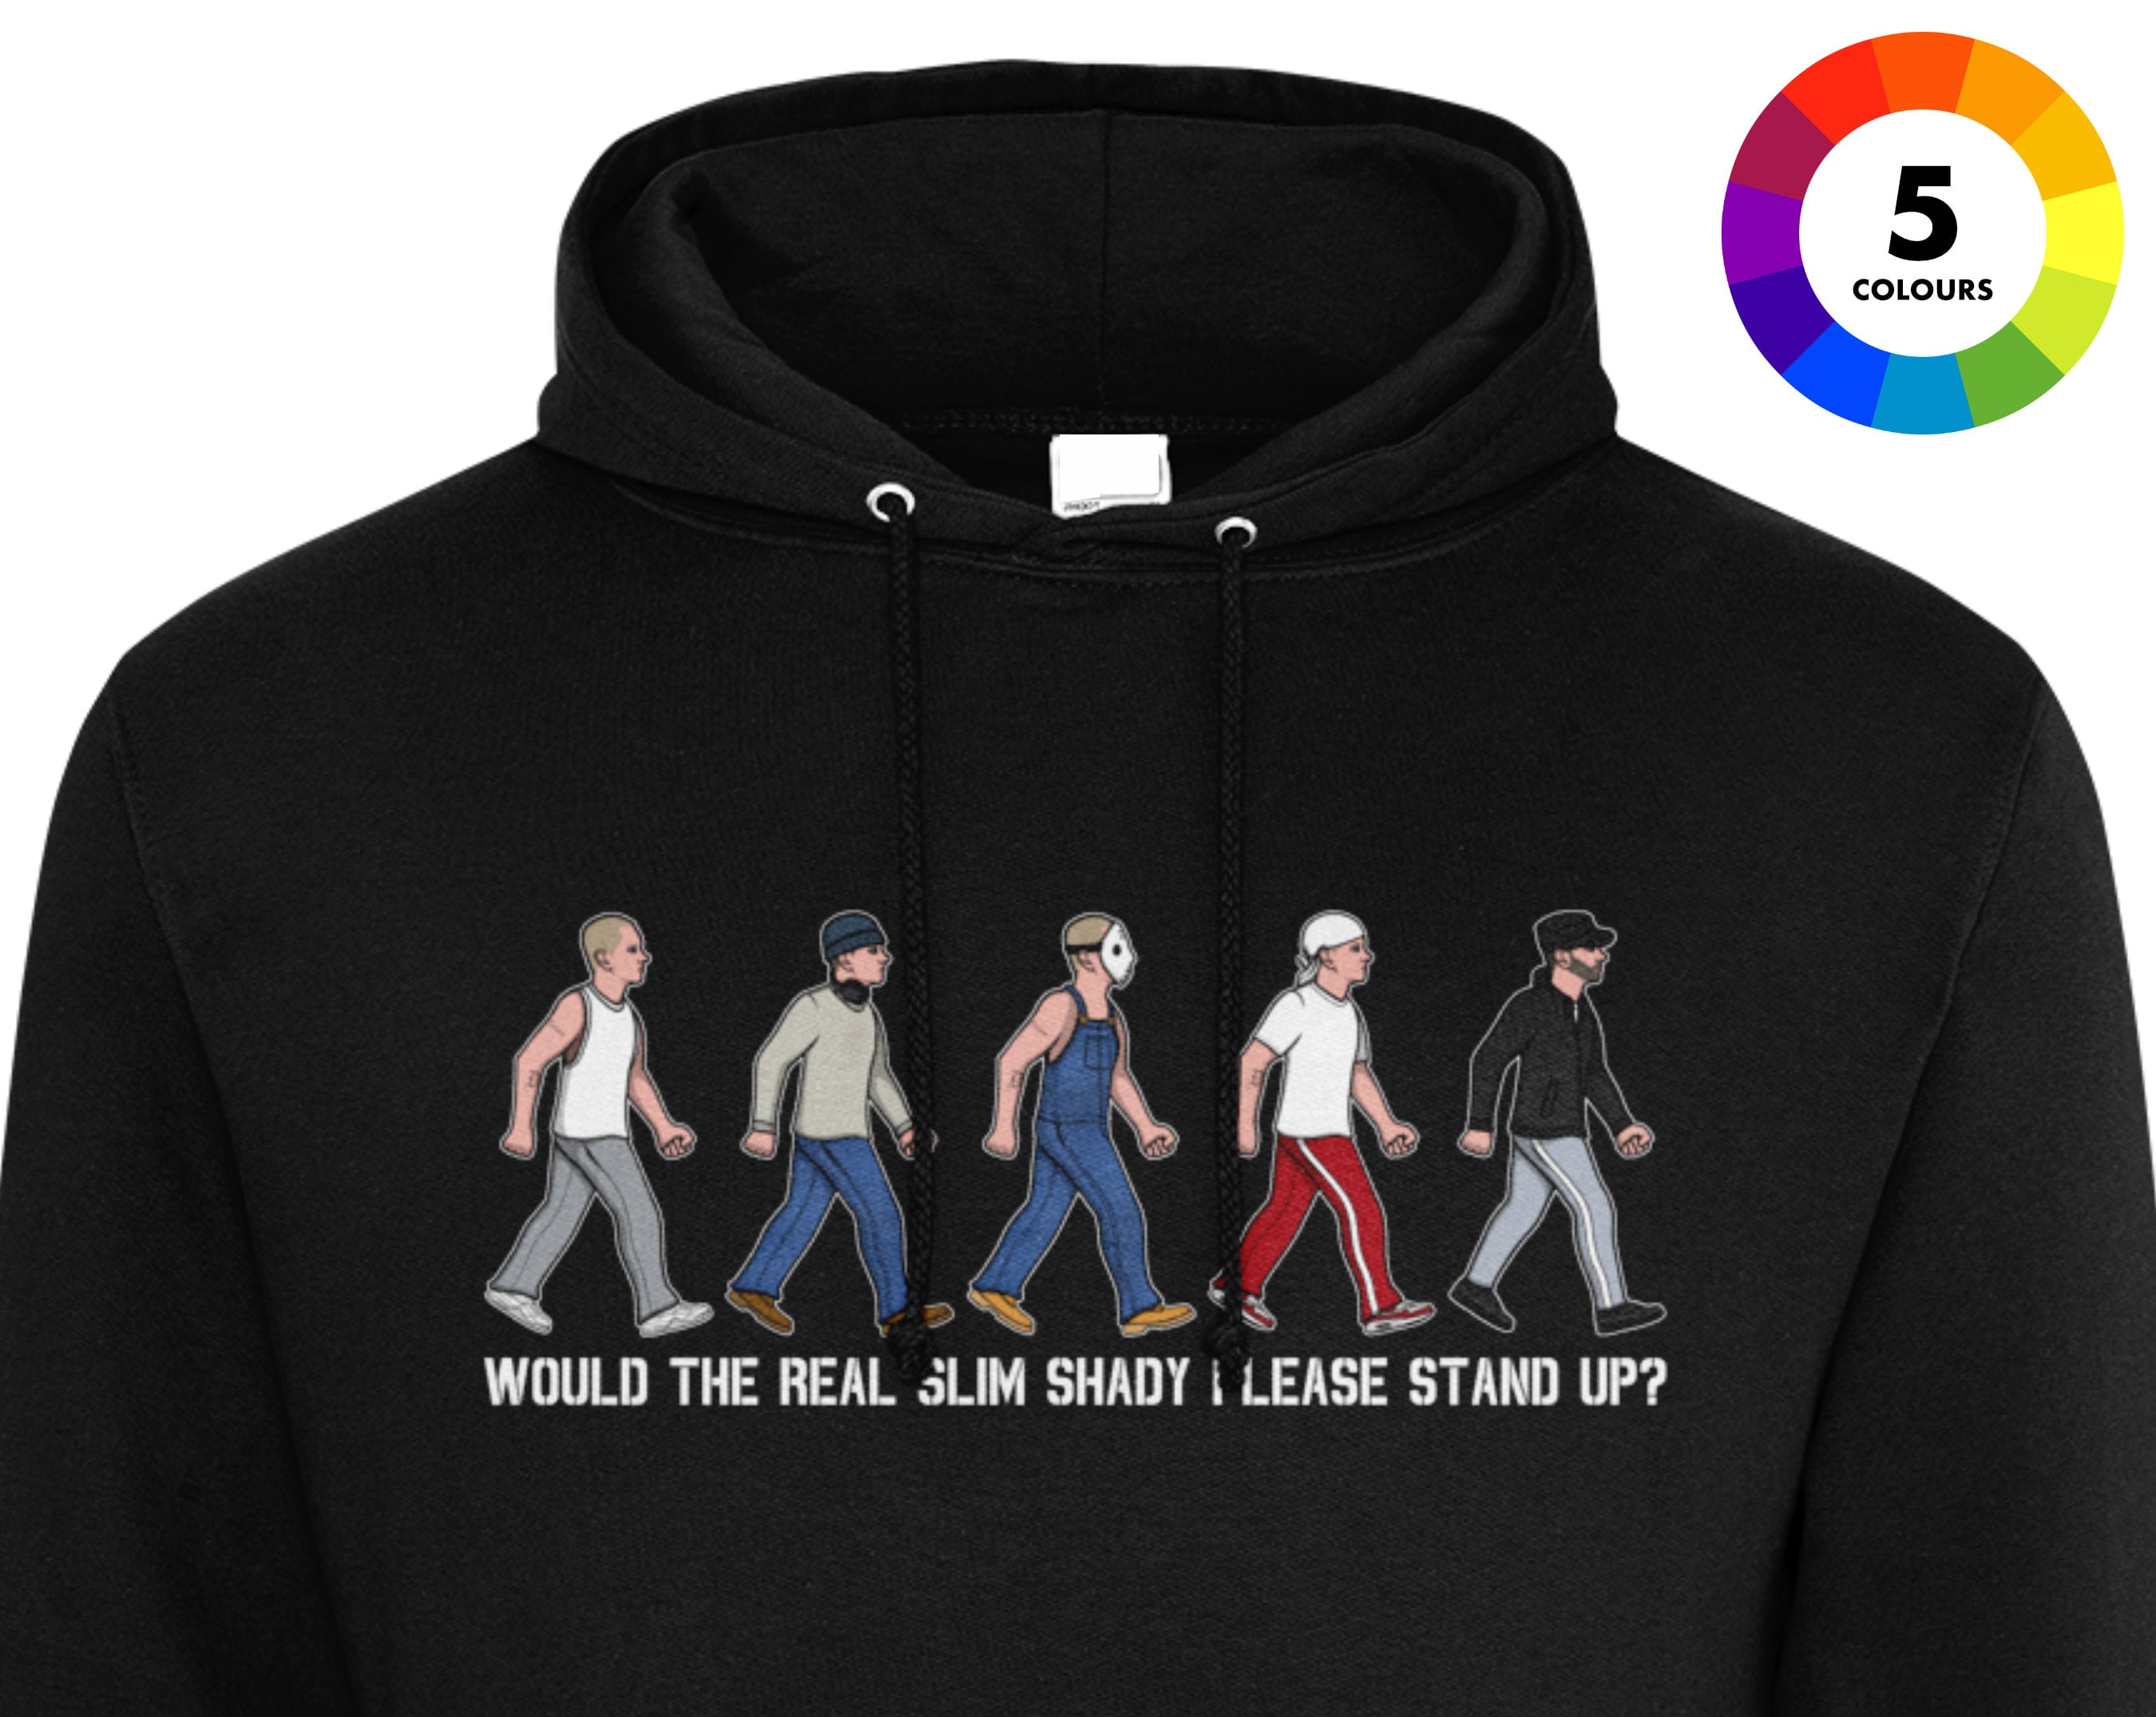 Eminem Music Tour Nov Trending Sweatshirt - Jolly Family Gifts